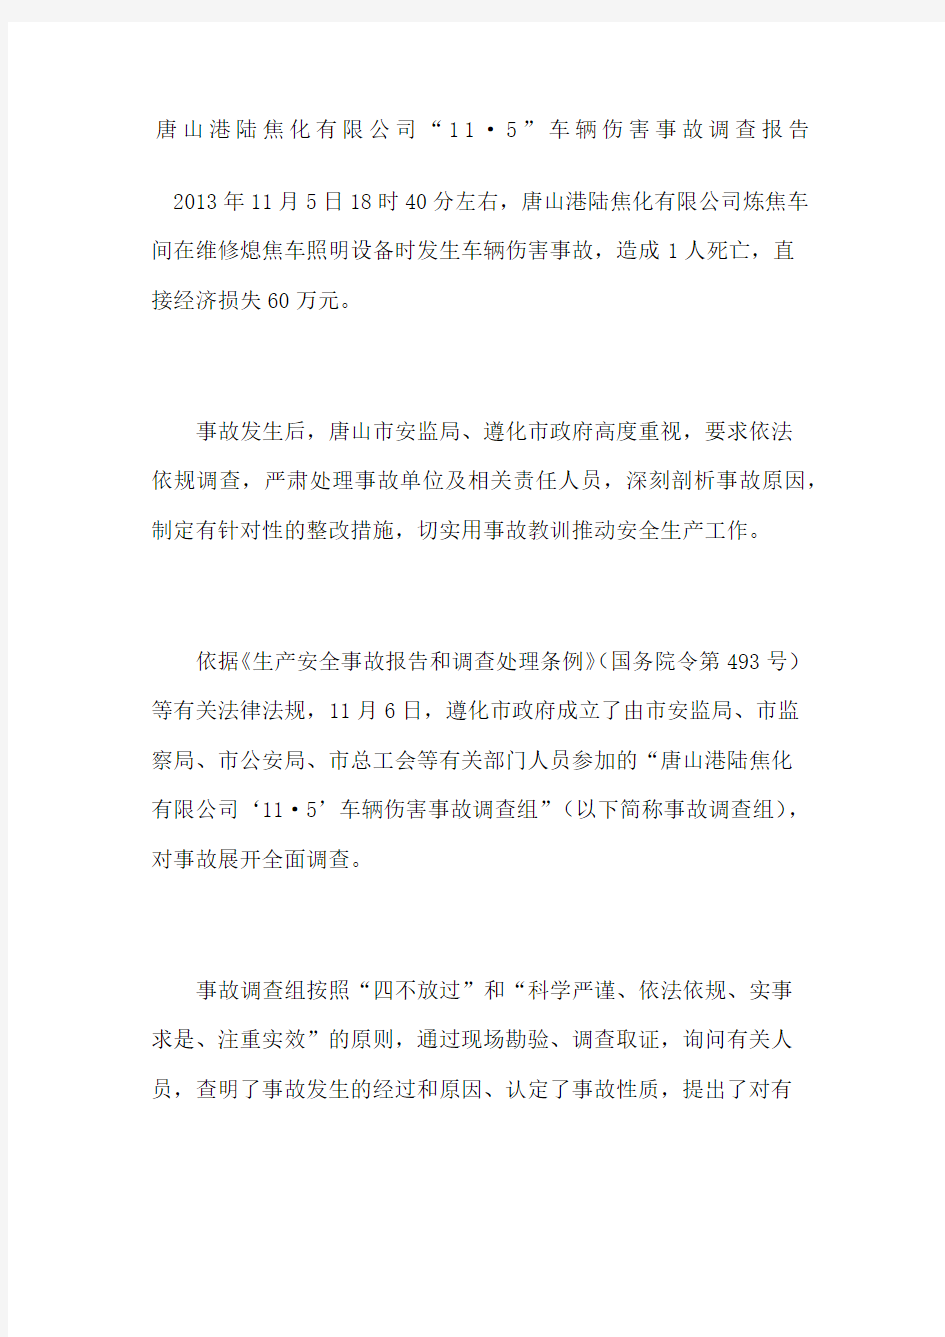 唐山港陆焦化公司“”车辆伤害事故调查报告